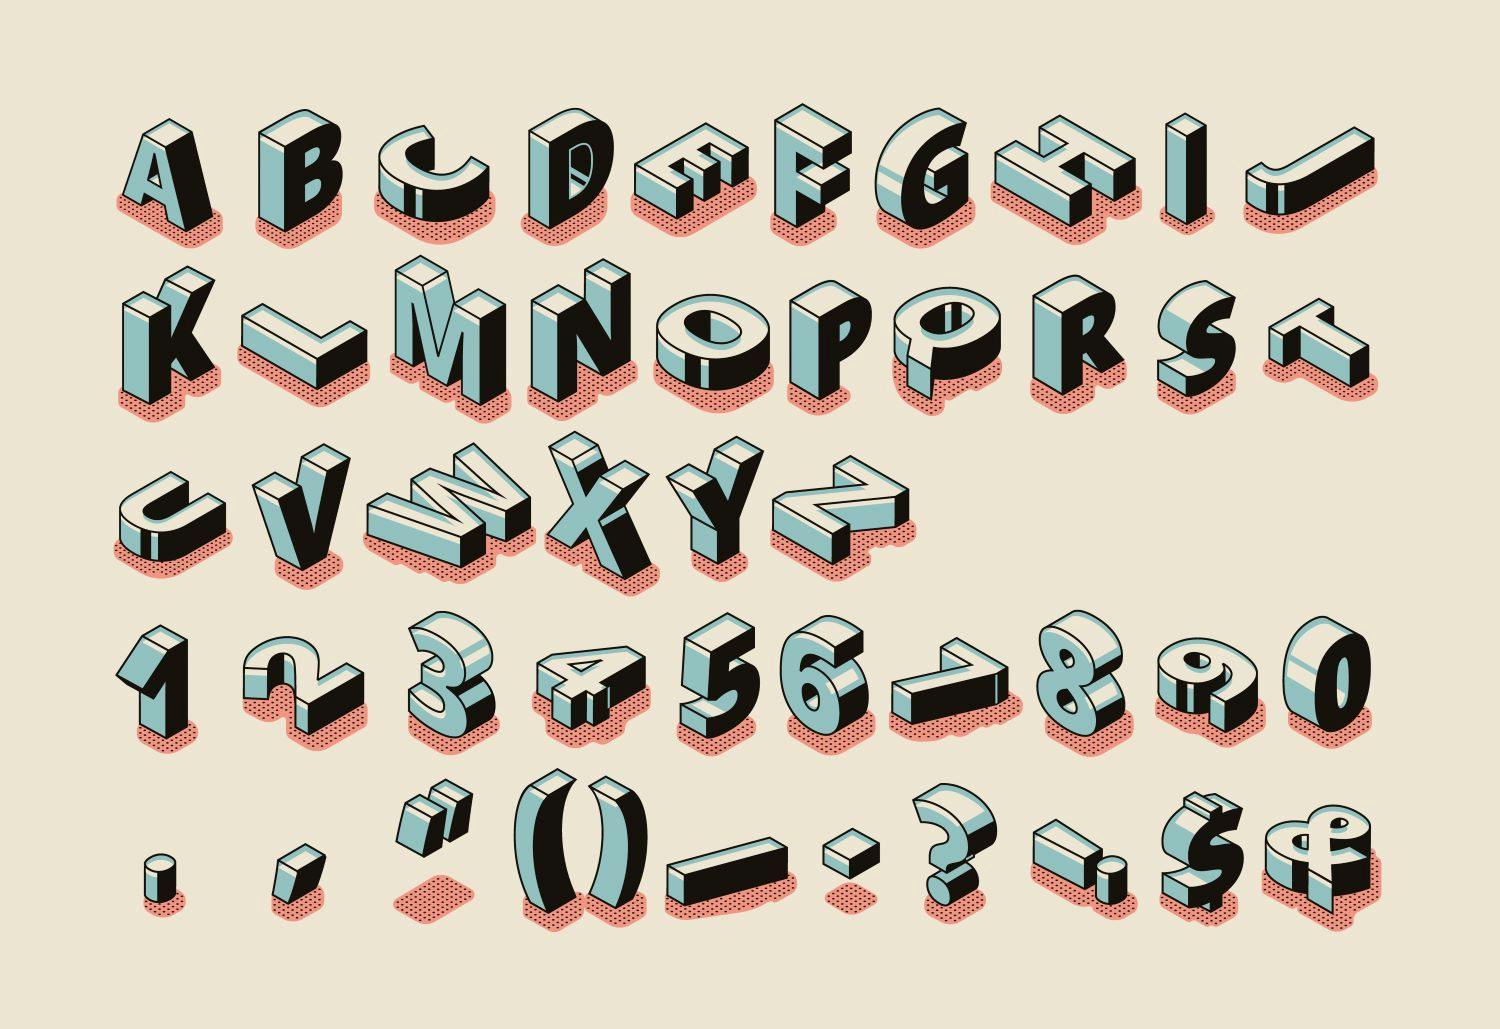 Typografia